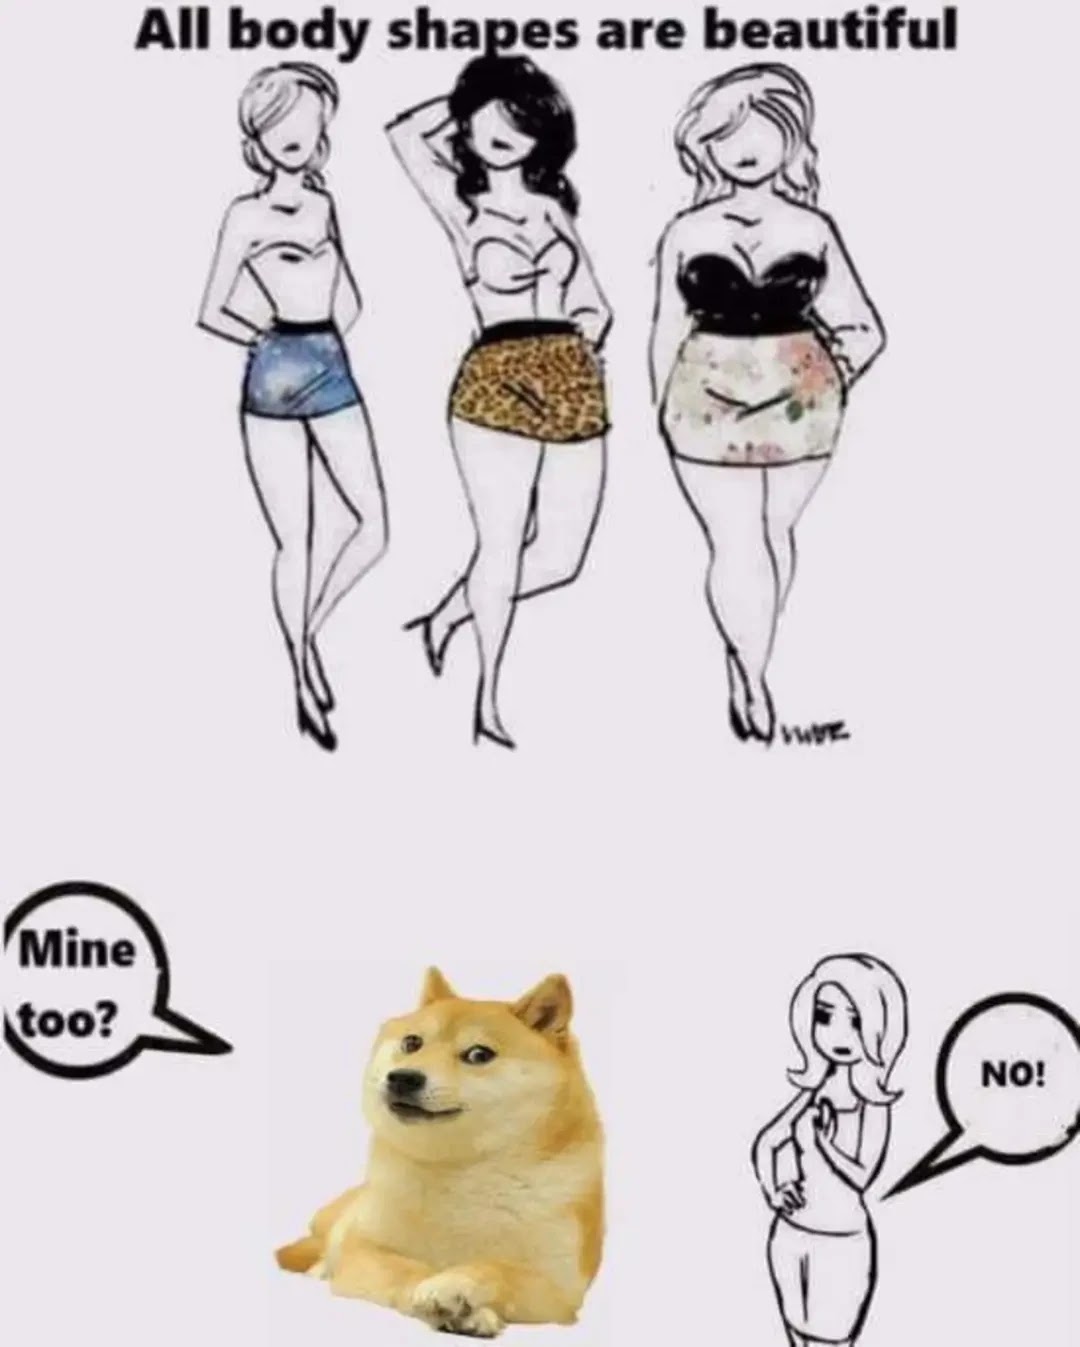 English Doge memes